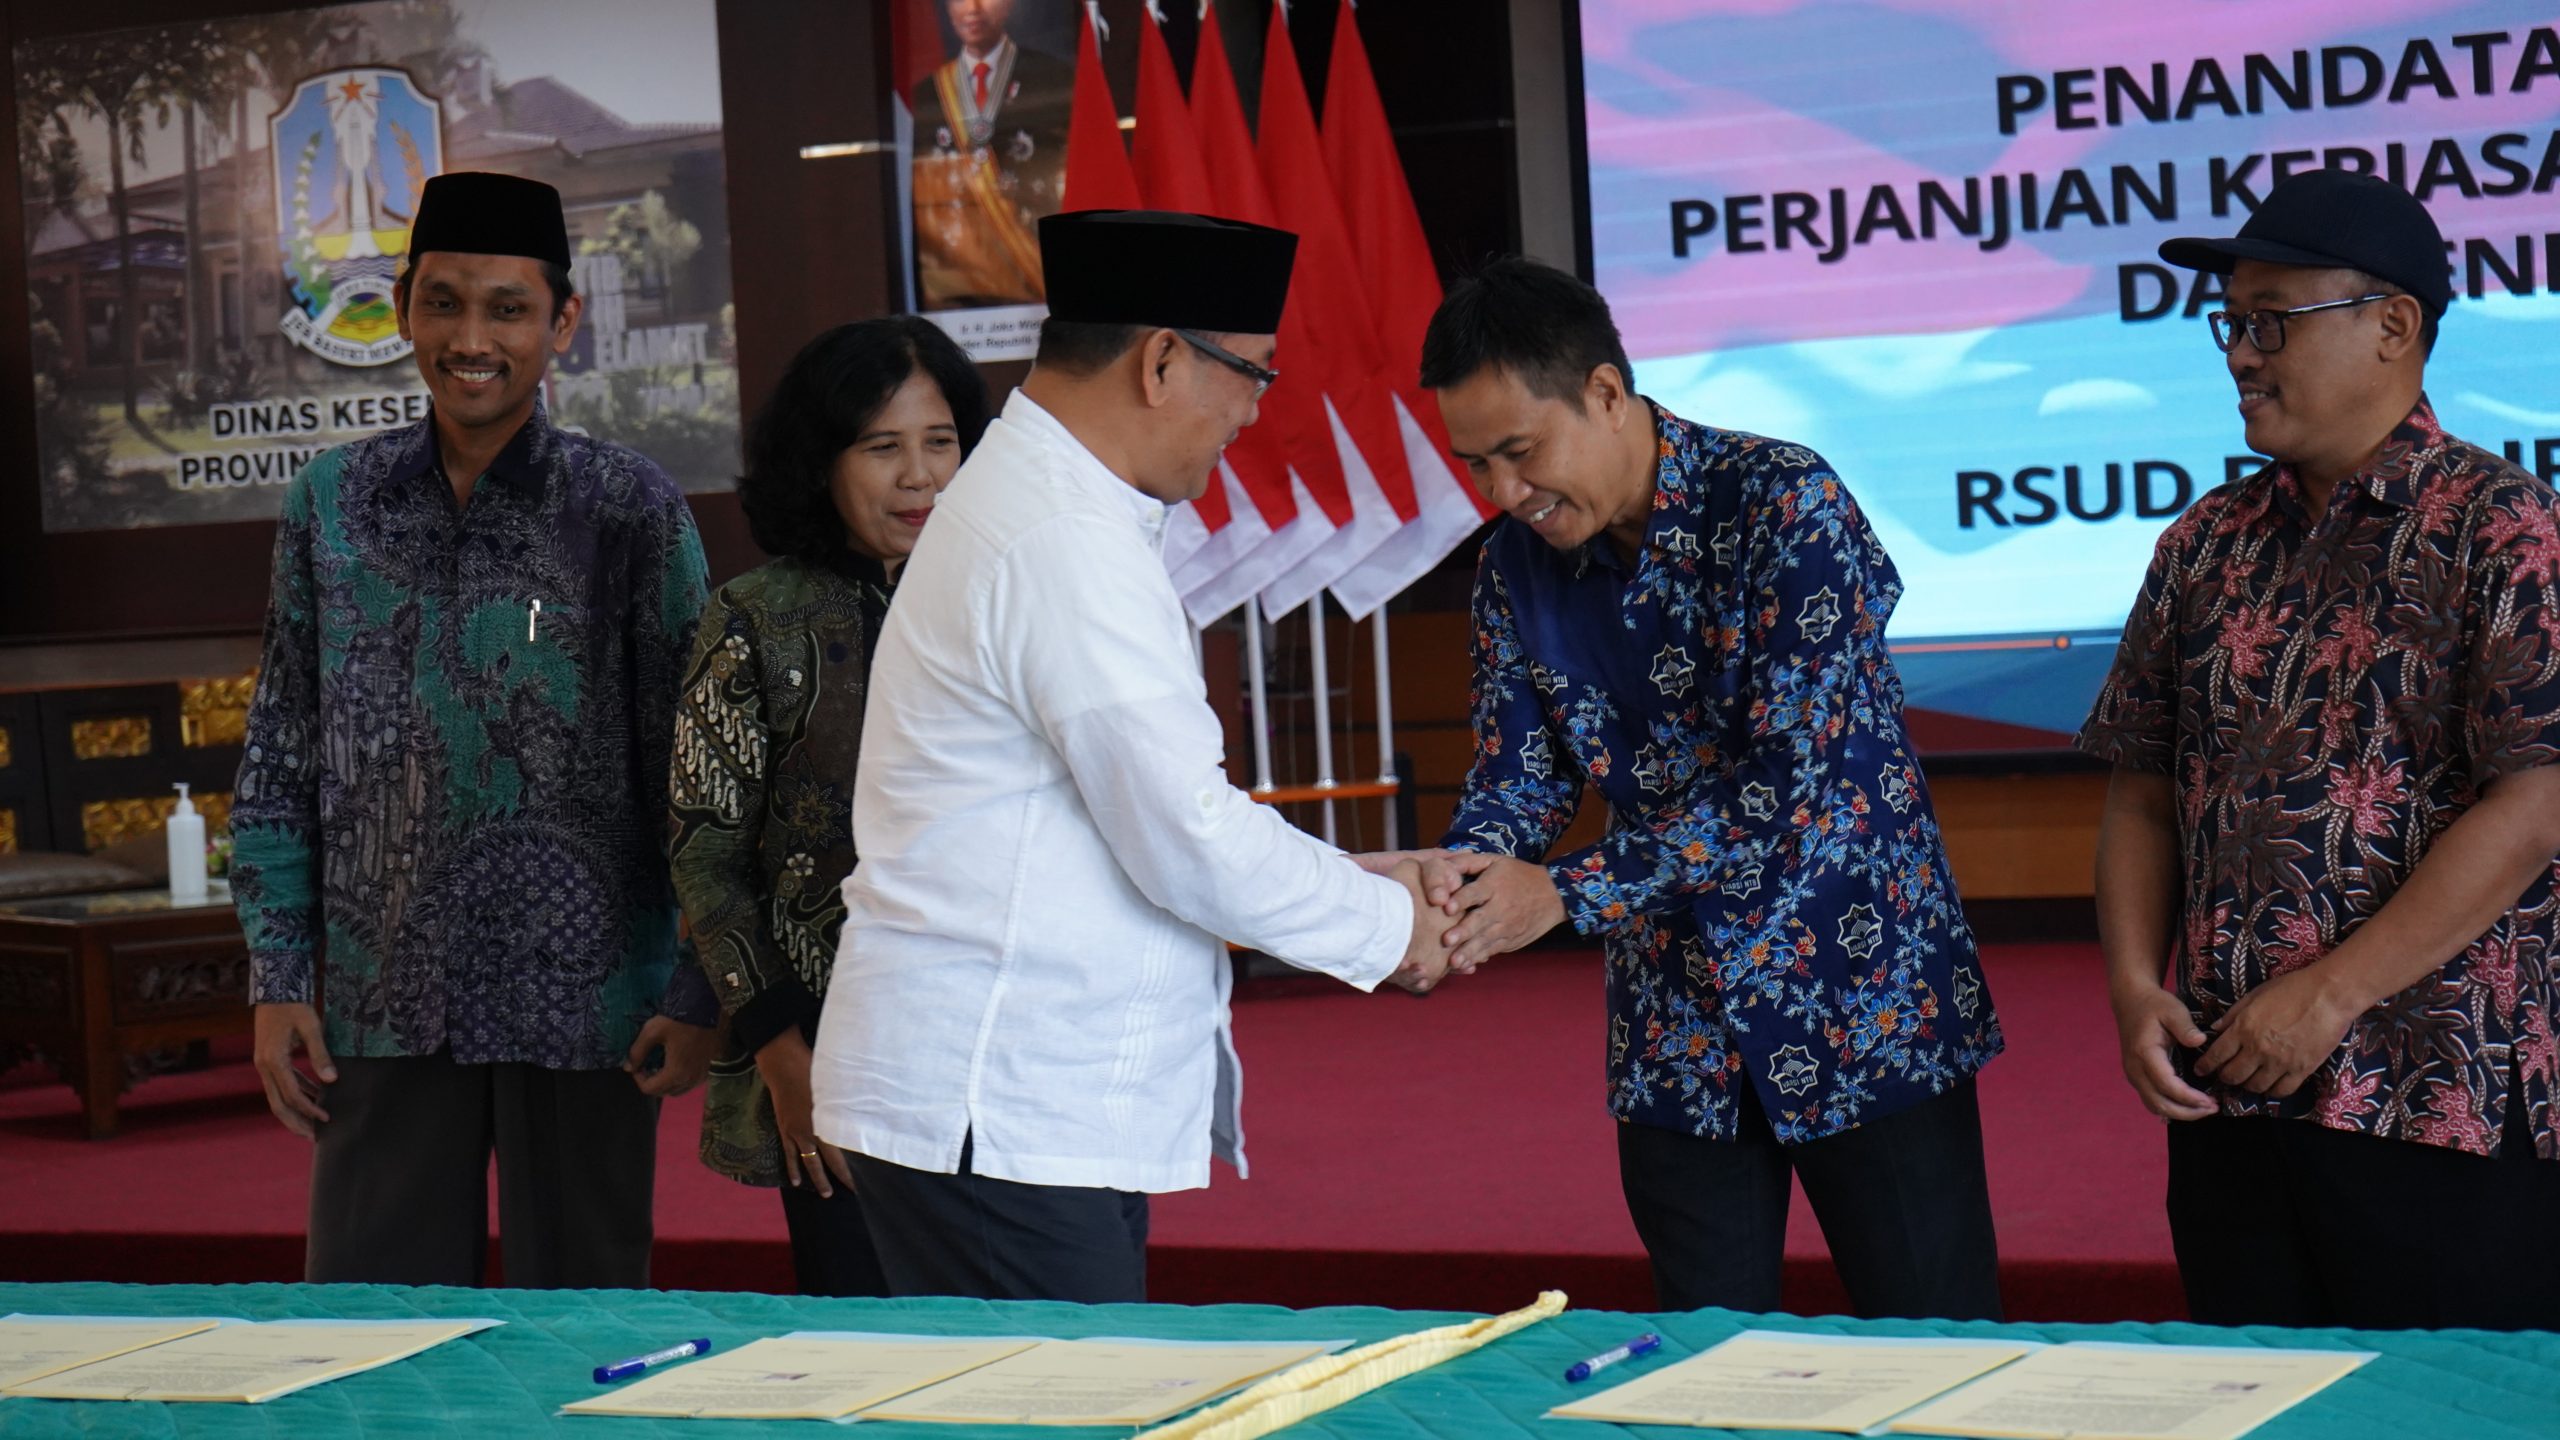 Penandatanganan Perjanjian Kerjasama Pendidikan dan Penelitian dengan RSUD Dr. Saiful Anwar Prov Jatim